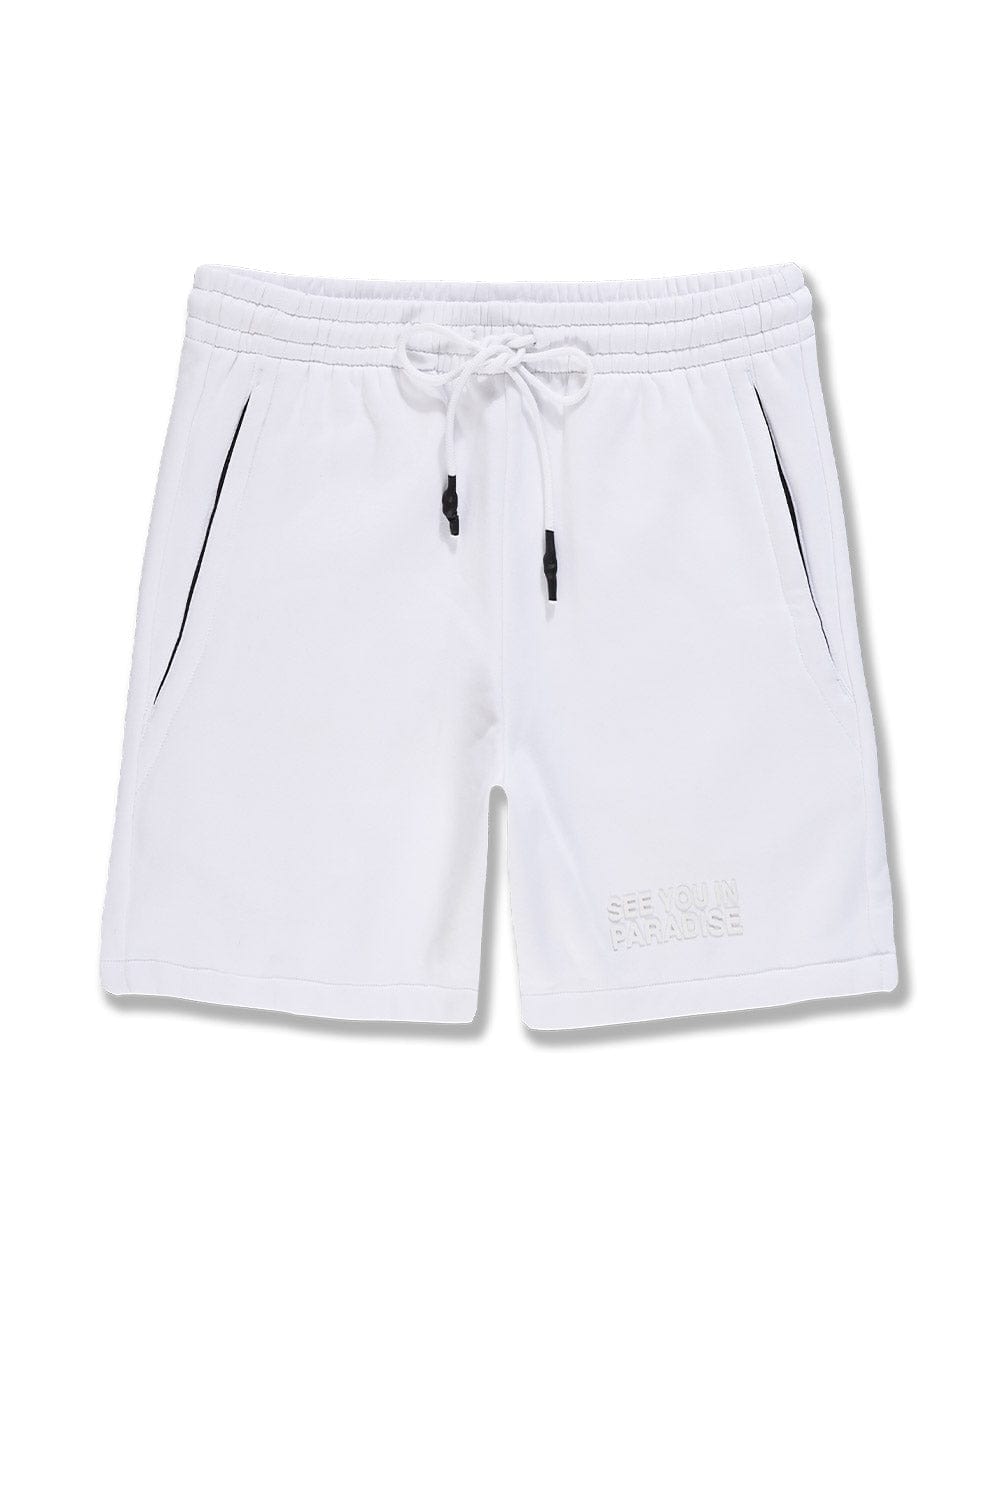 JC Big Men Big Men's Retro Paradise Tonal Shorts (White)